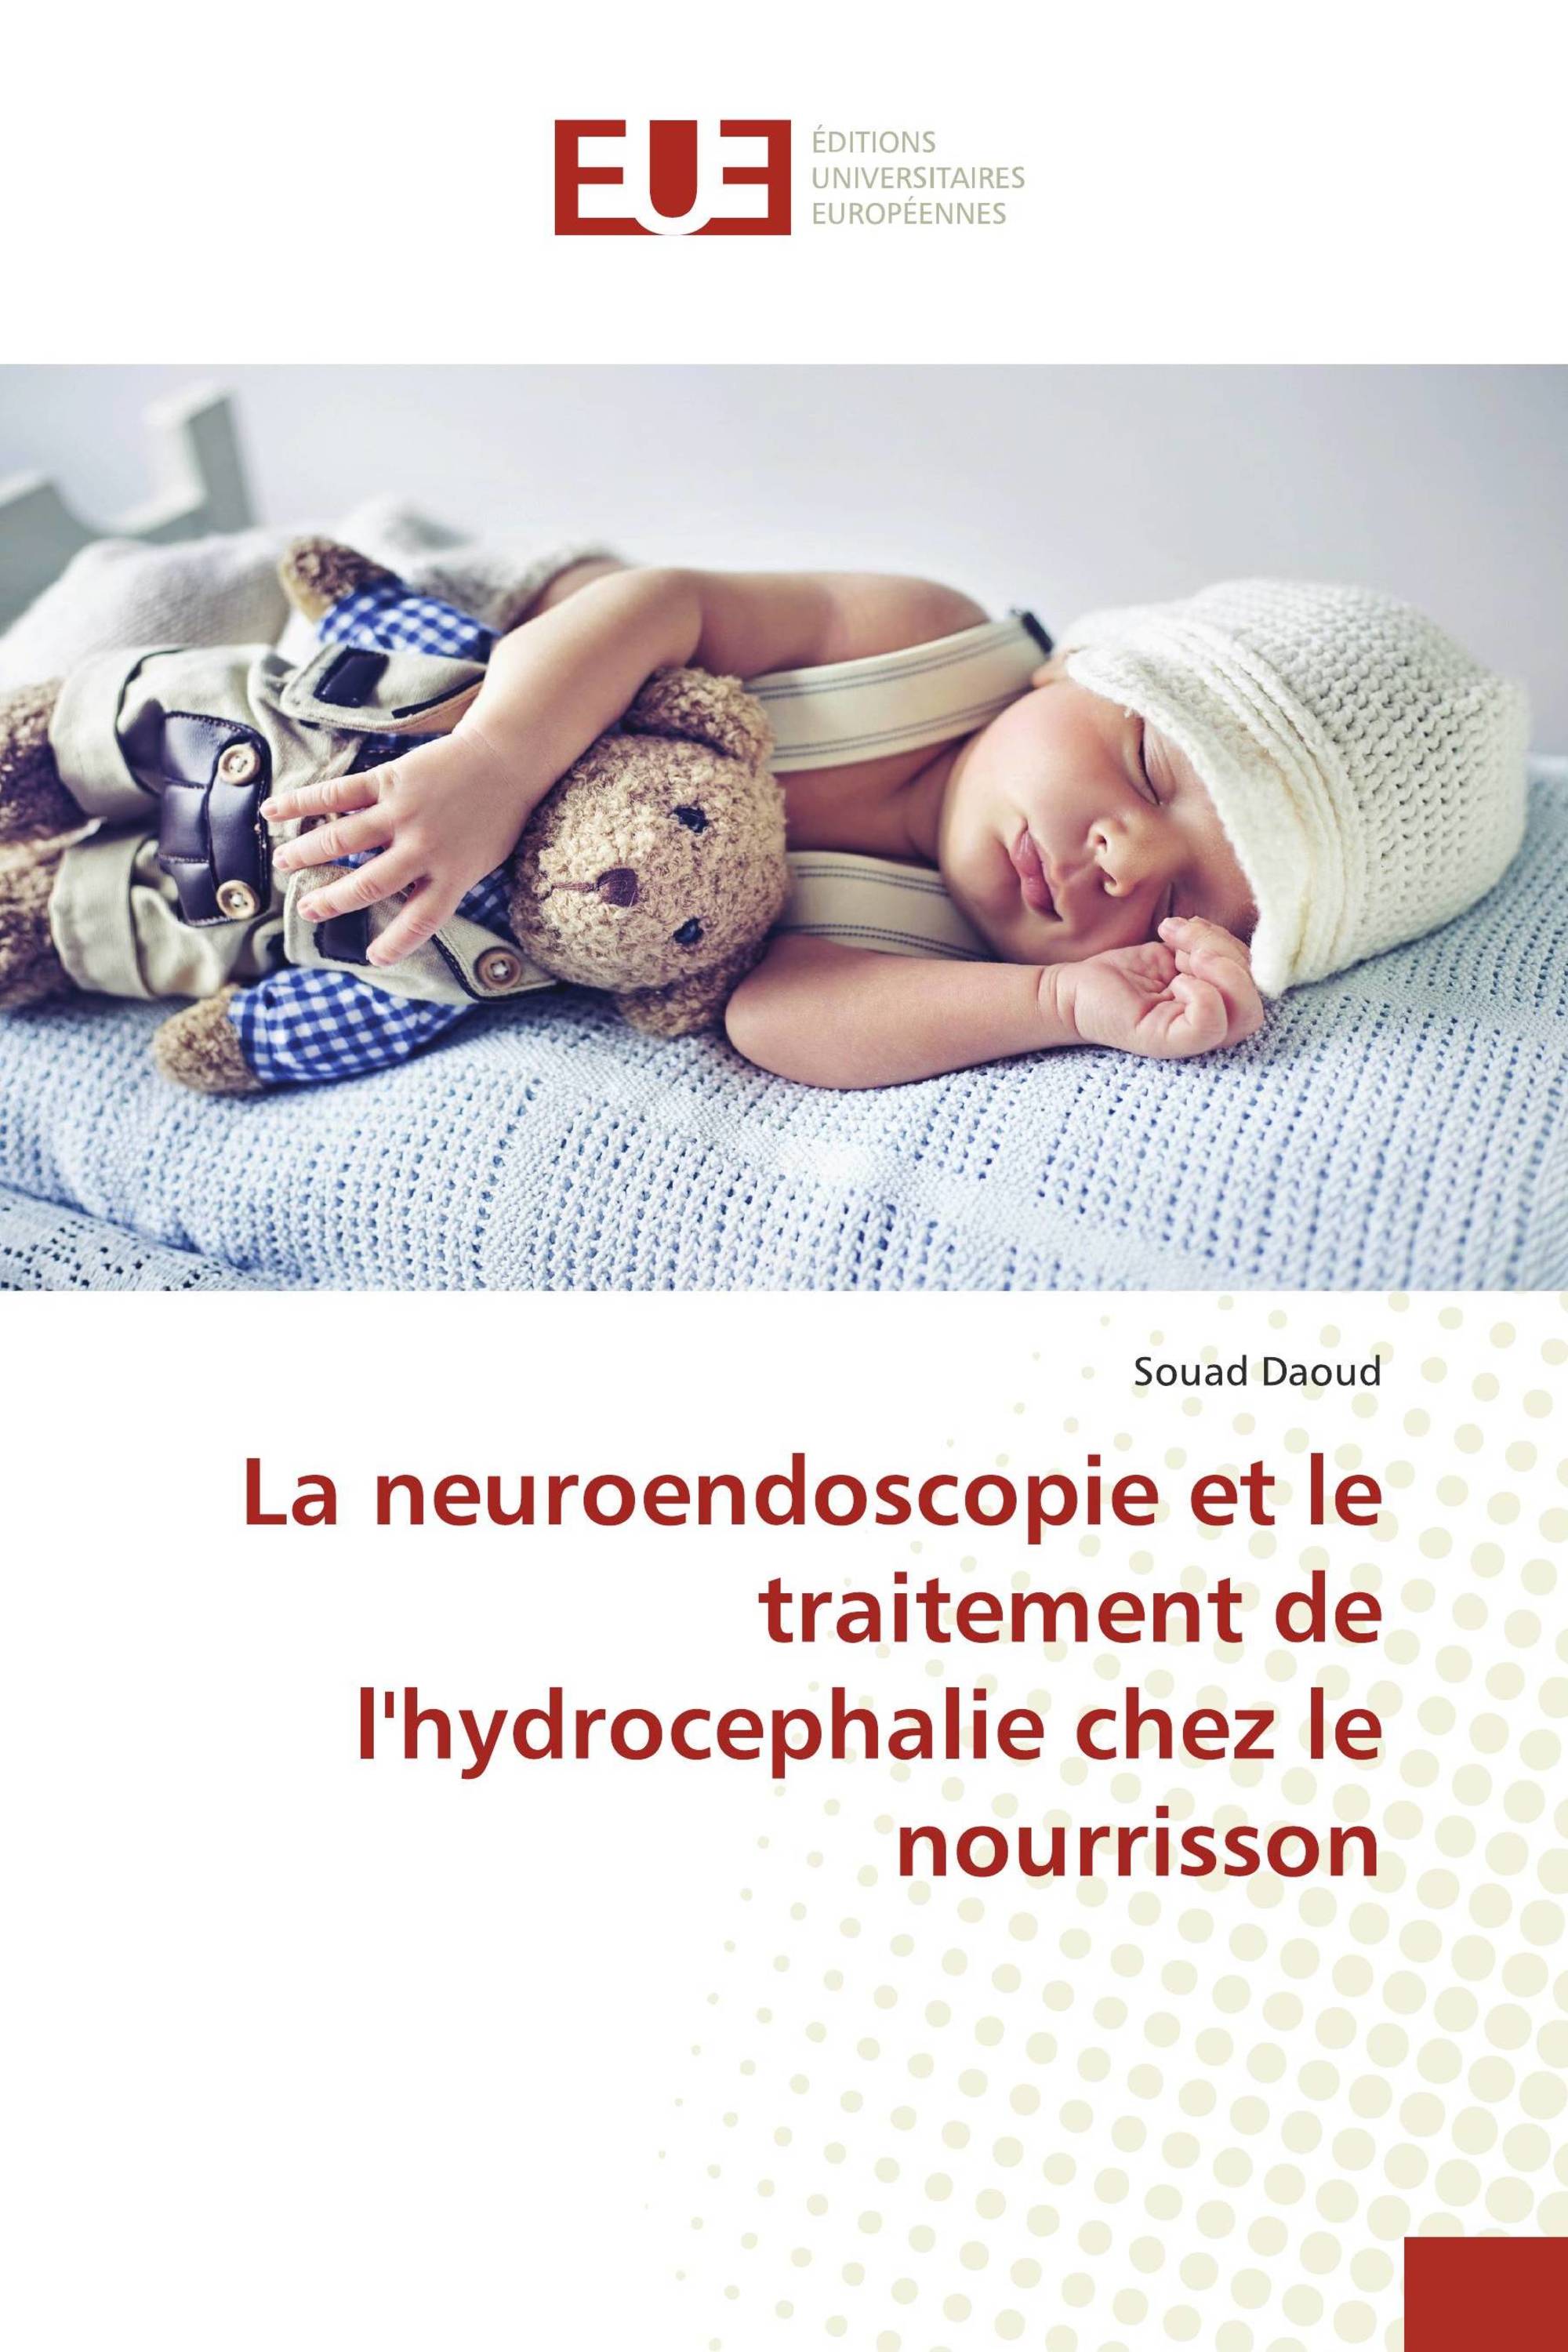 La Neuroendoscopie Et Le Traitement De Lhydrocephalie Chez Le Nourrisson 978 620 3 43700 3 4379